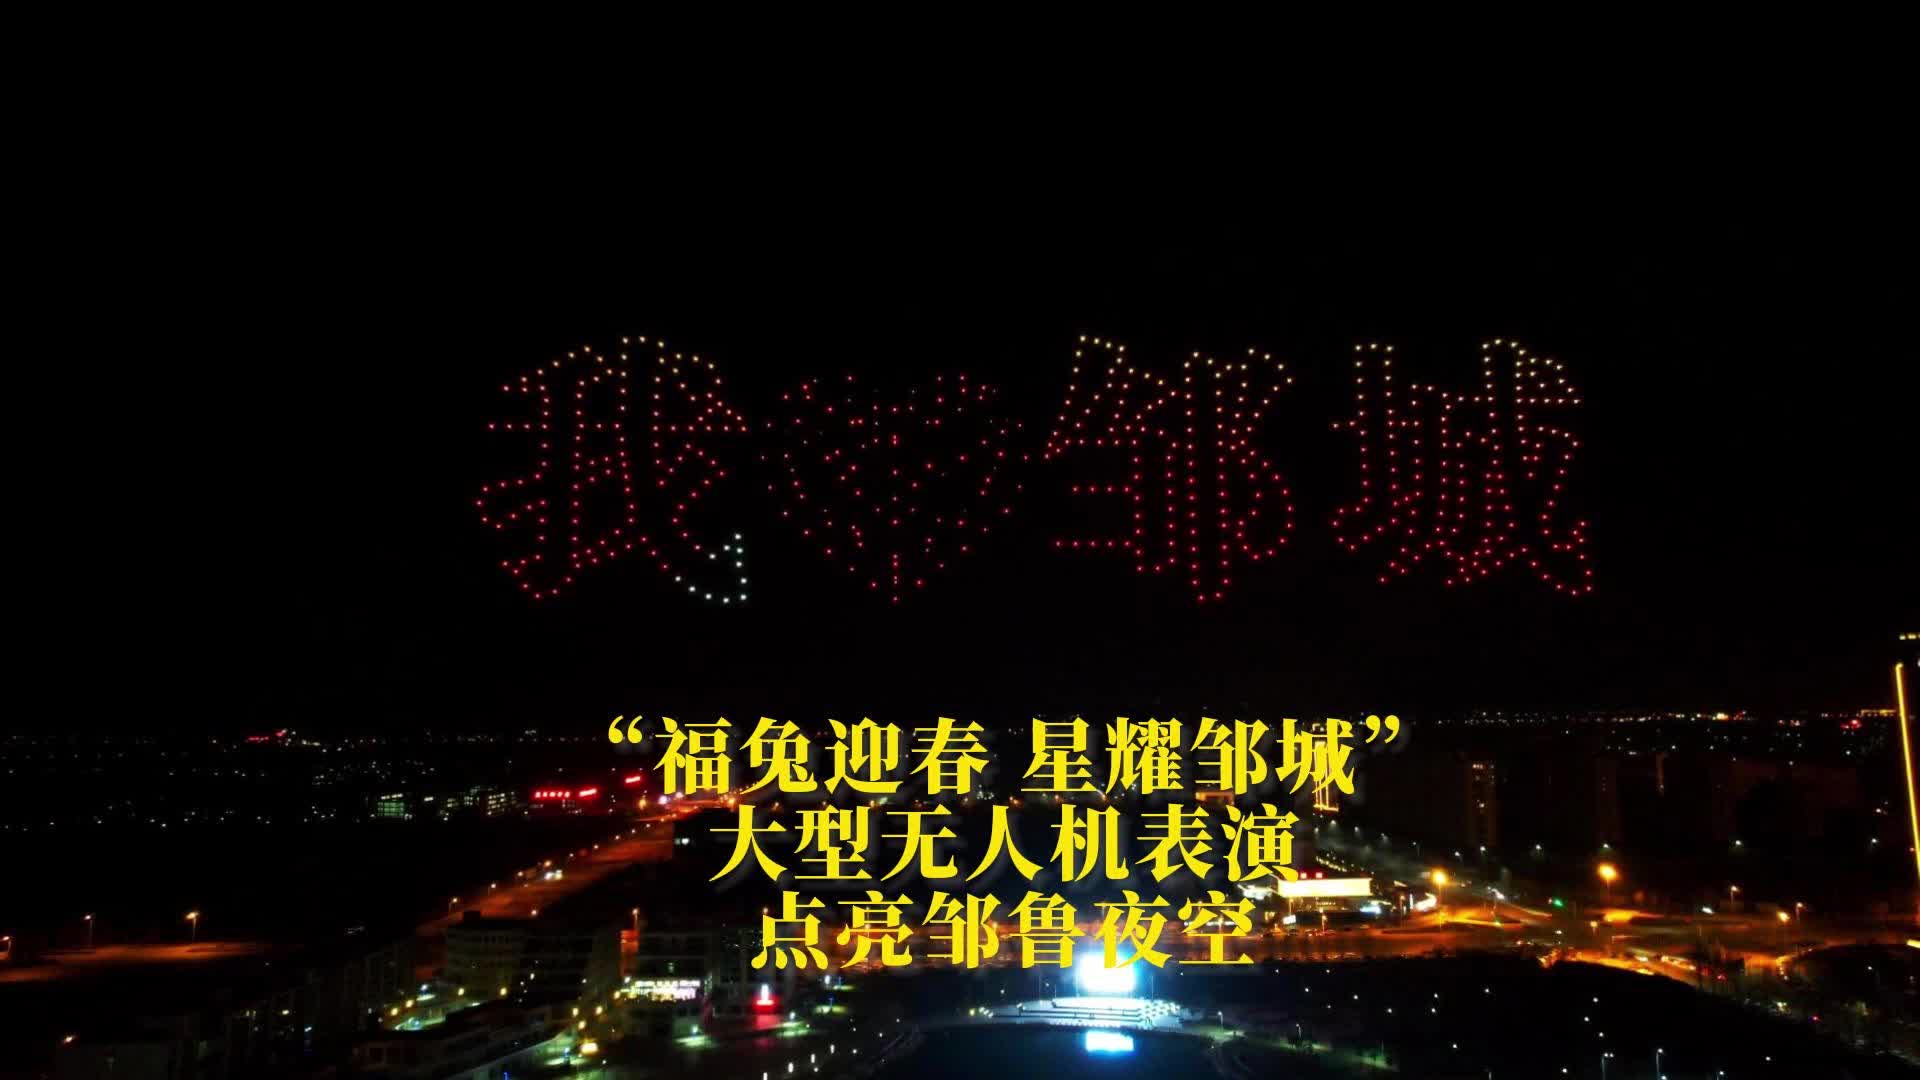 【邹视频·新闻】84秒 | “福兔迎春 星耀邹城”大型无人机表演点亮邹鲁夜空